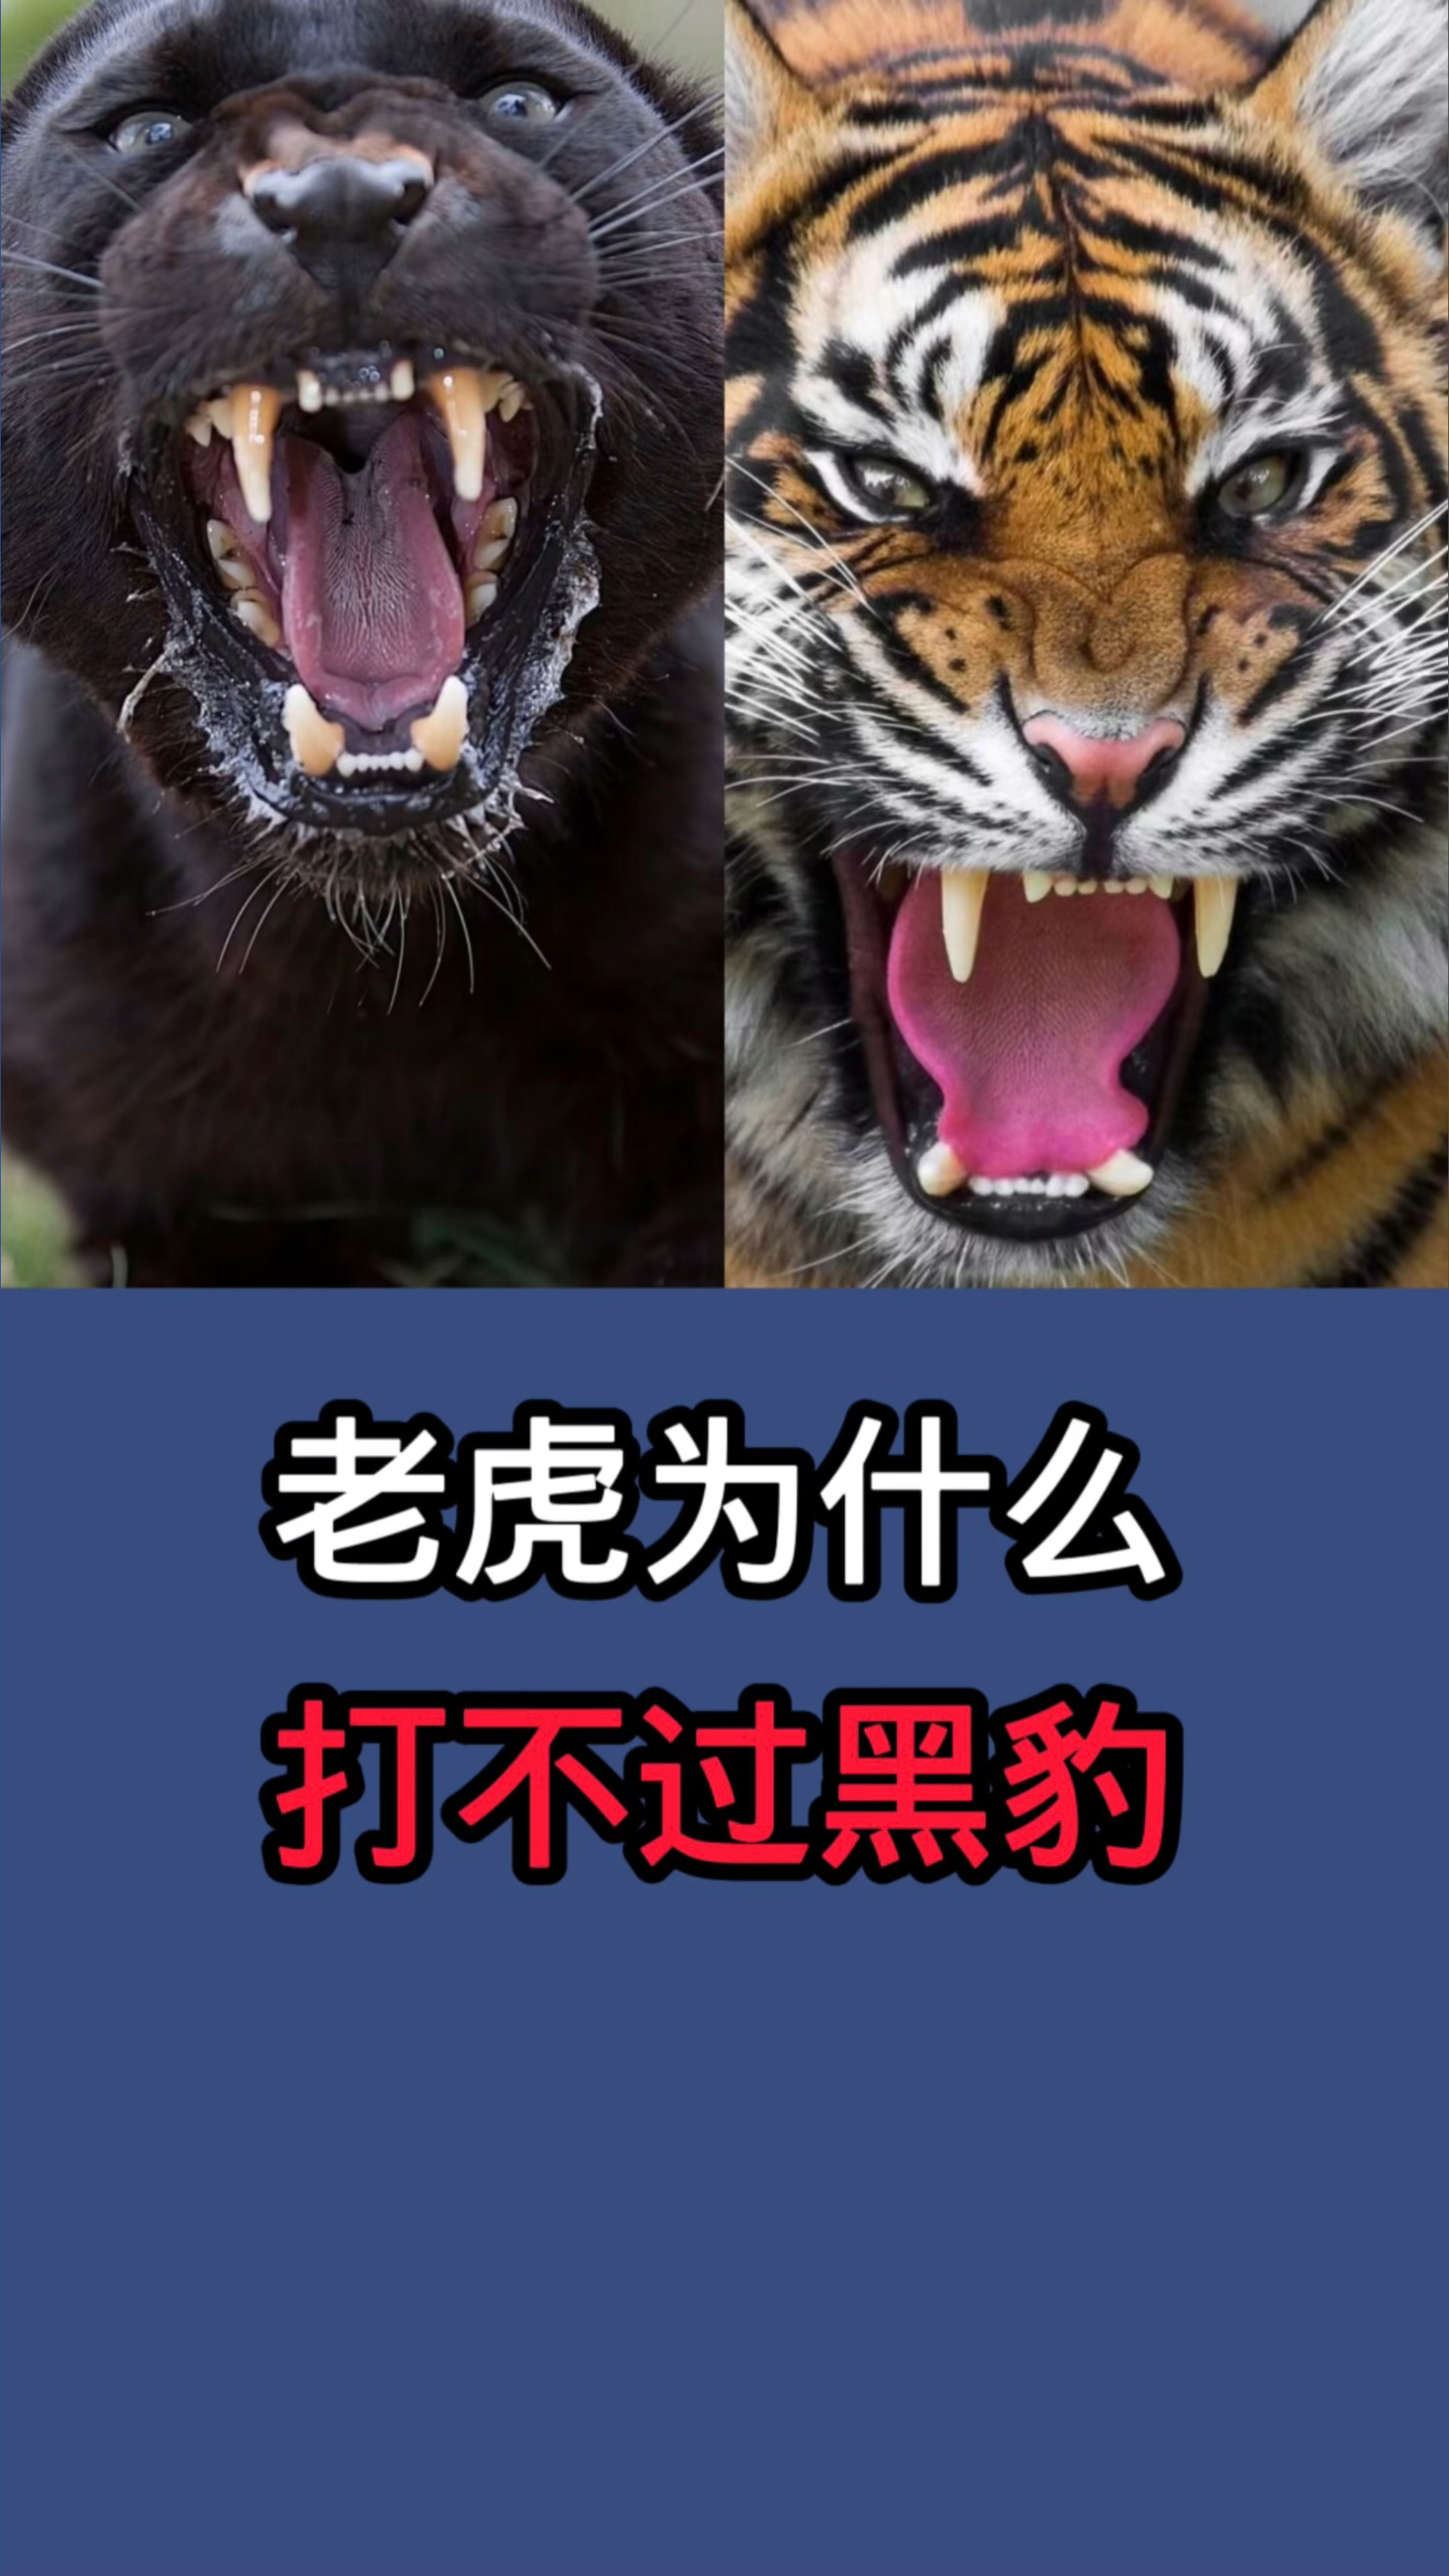 东北虎vs黑豹图片